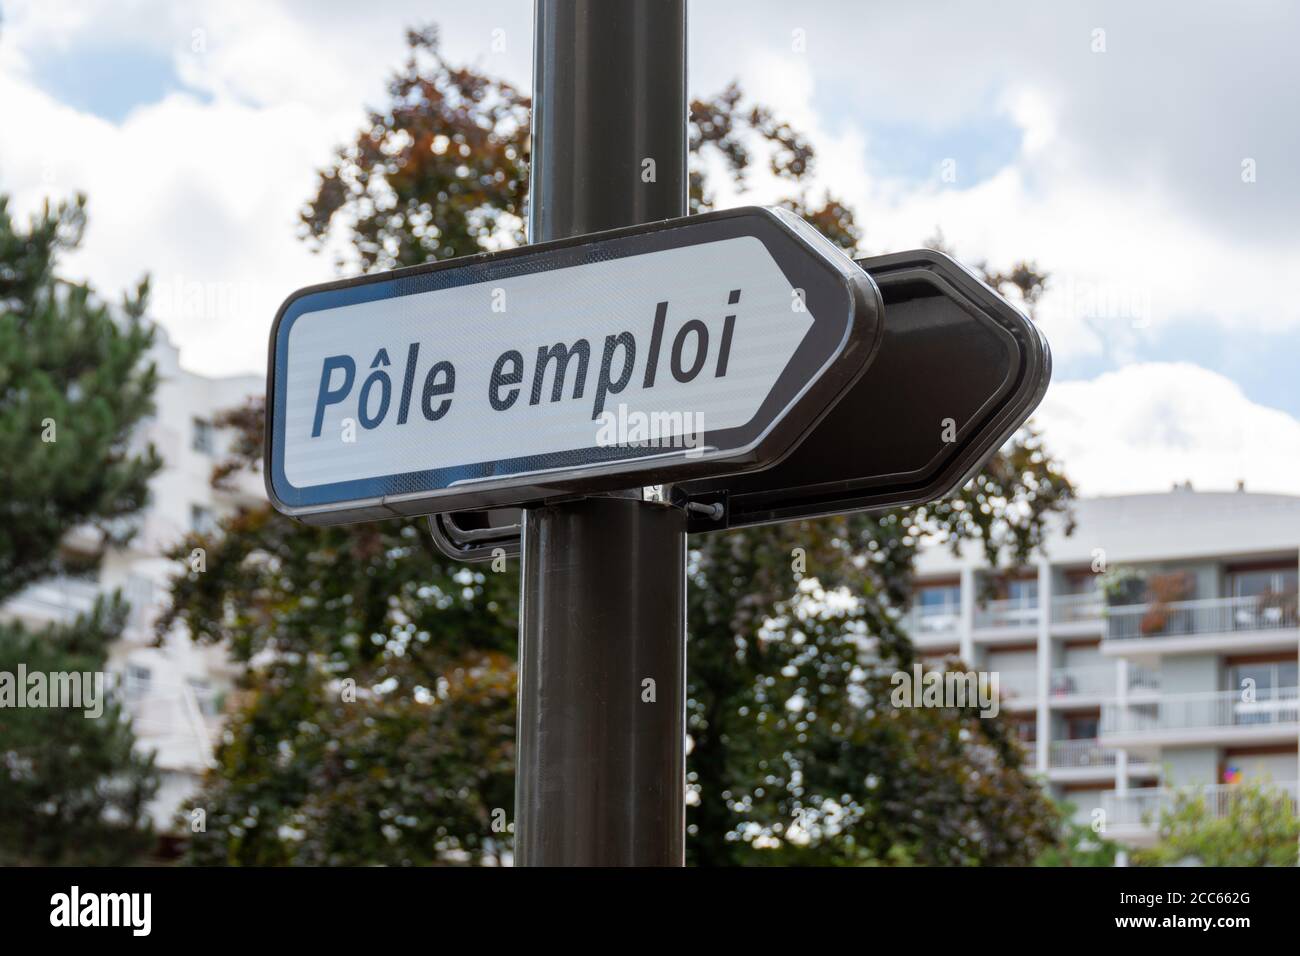 Straßenschild mit der Aufschrift "Pôle emploi", was "Job Center" bedeutet, in französischer Sprache geschrieben. Konzepte von Wirtschaftskrise, Arbeitslosigkeit und Entlassungen. Frankreich Stockfoto